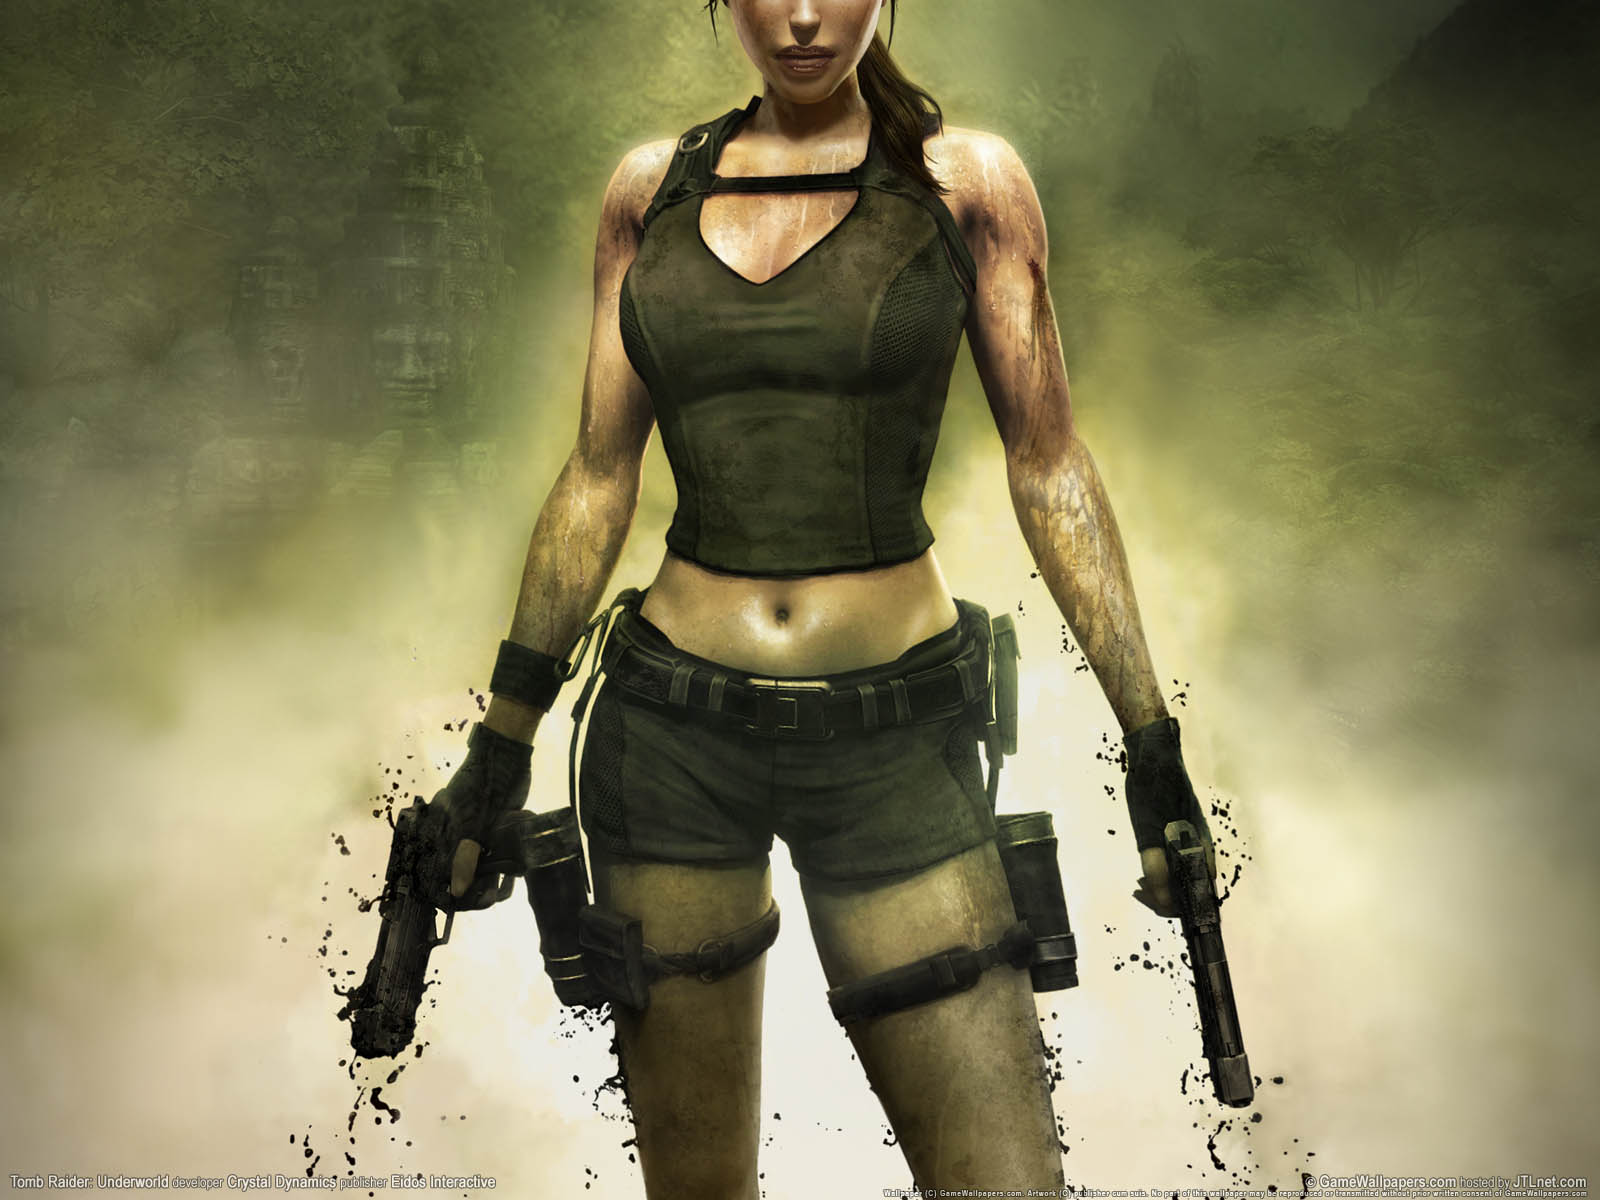 Tomb Raider%3A Underworld fond d'cran 05 1600x1200